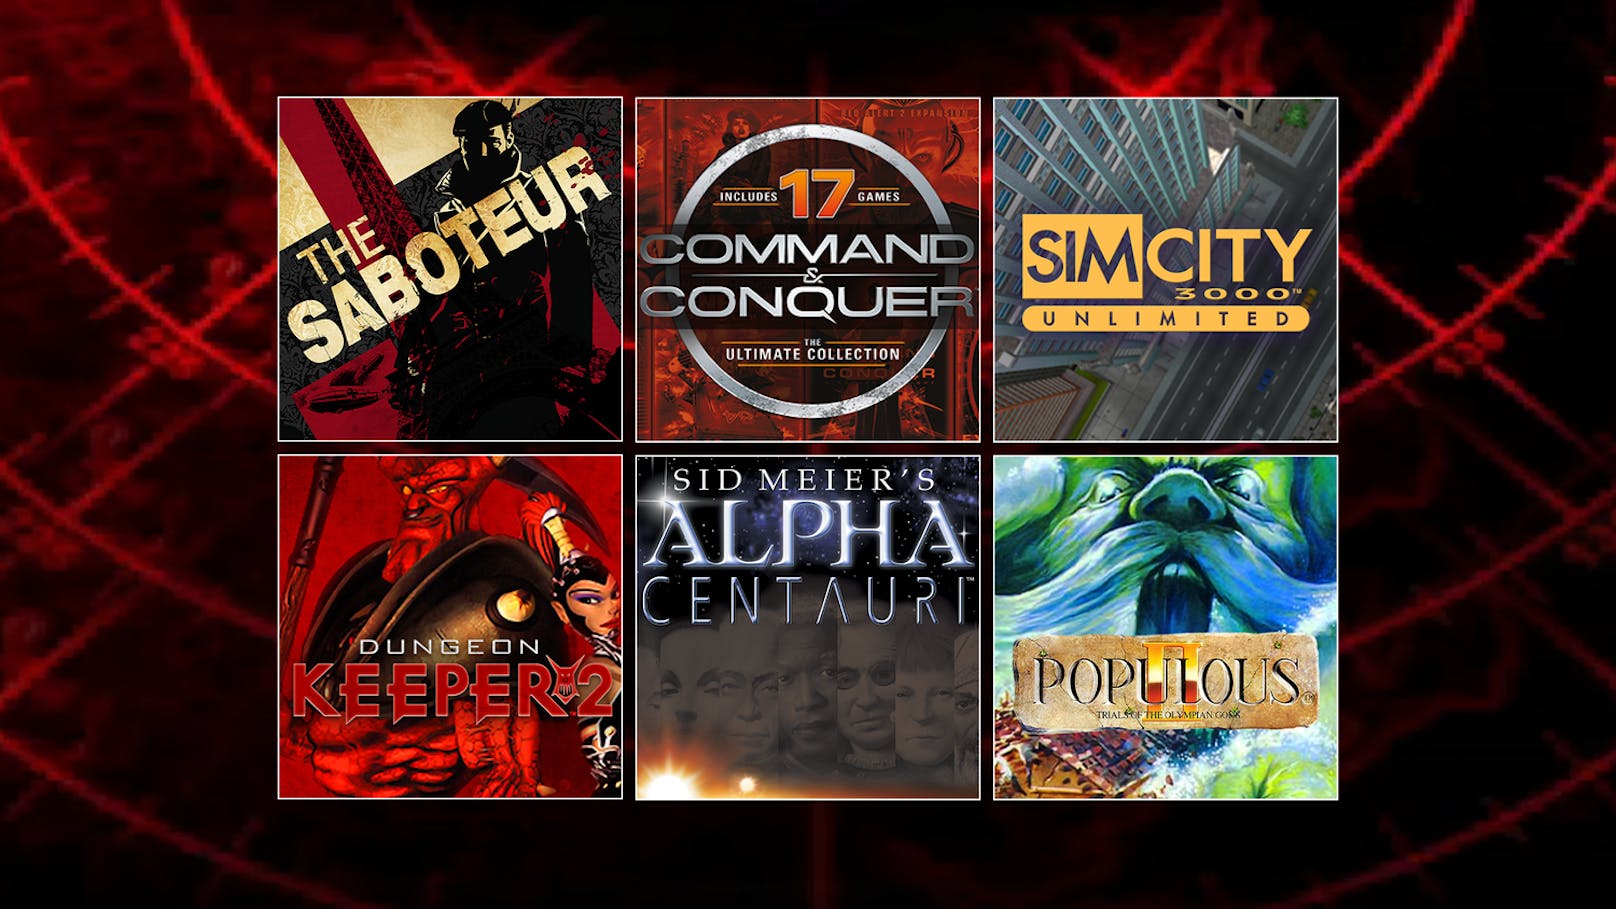 EA veröffentlicht klassische PC-Titel auf Steam - "Populous", "Dungeon Keeper", "The Saboteur" und mehr.